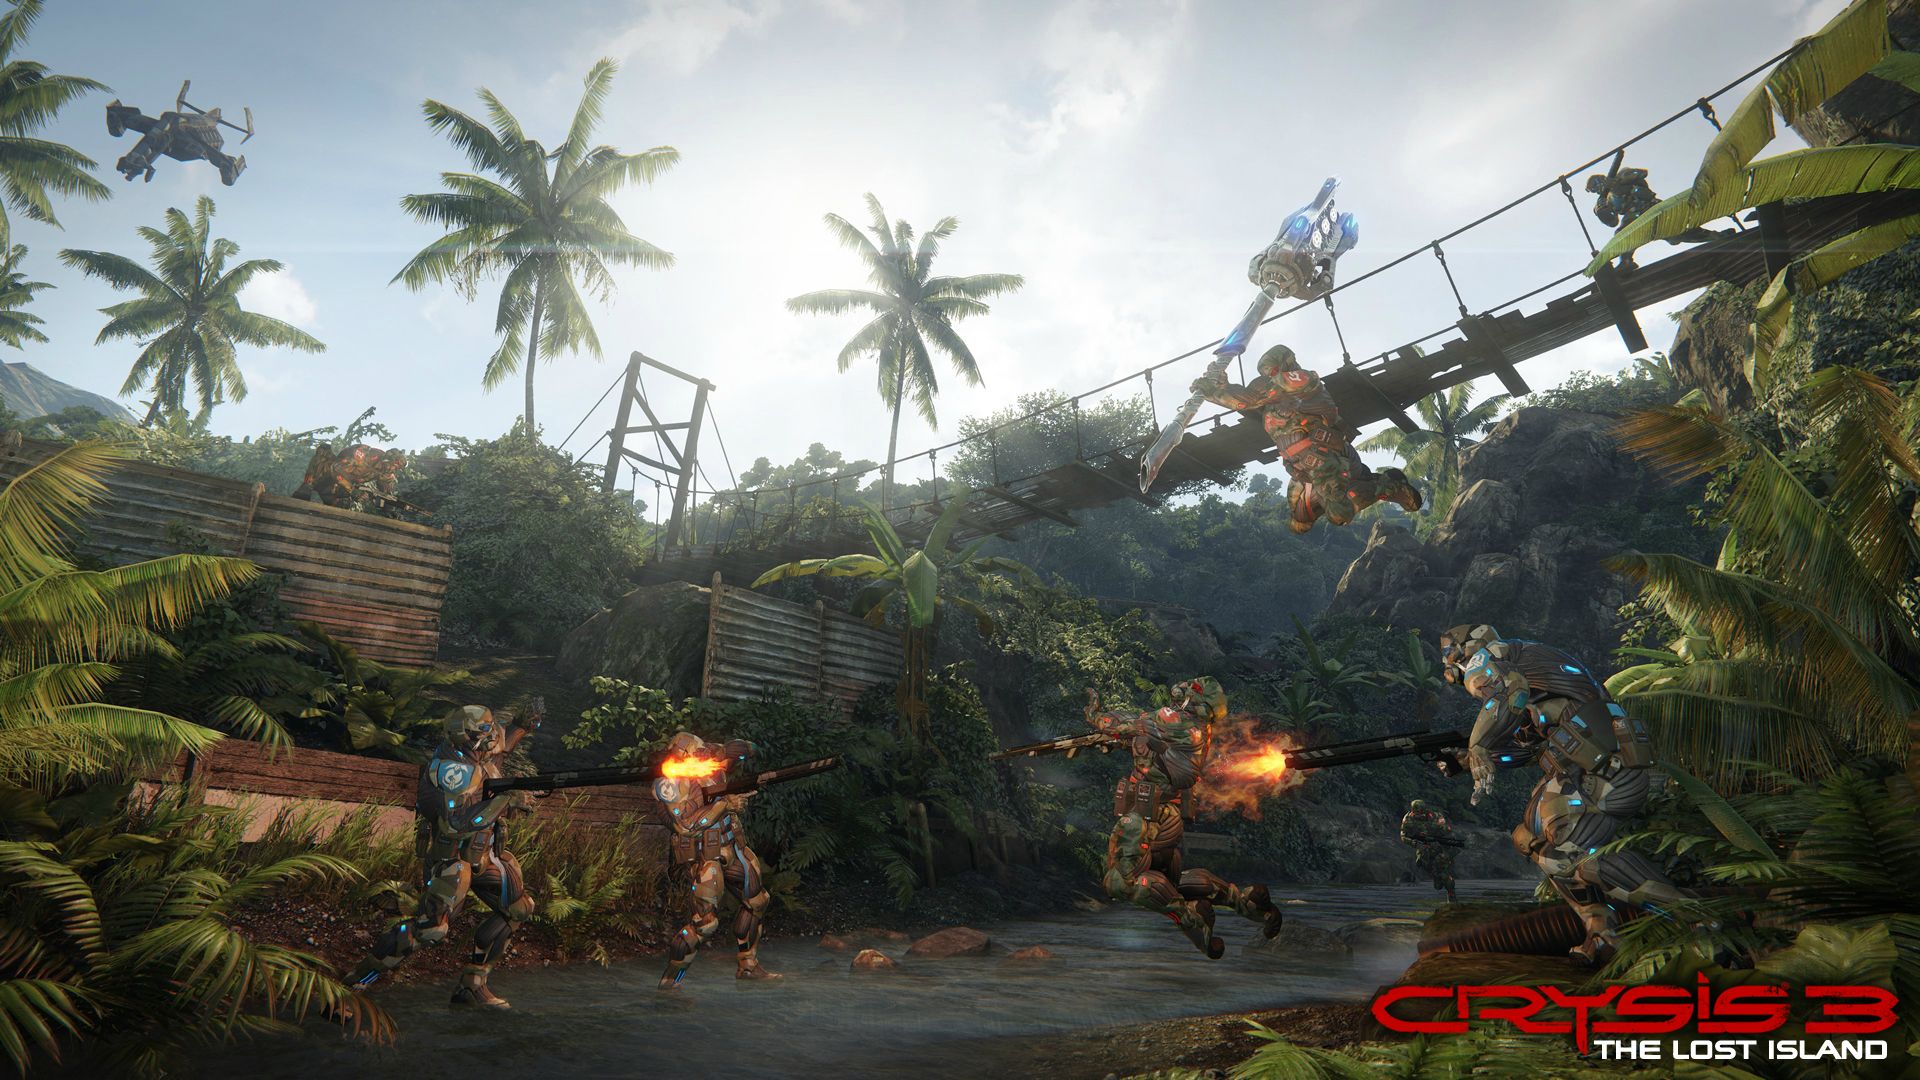 Immagine pubblicata in relazione al seguente contenuto: Presentazione e screenshots del DLC Crysis 3: The Lost Island | Nome immagine: news19611_Crysis-3-The-Lost-Island_3.jpg